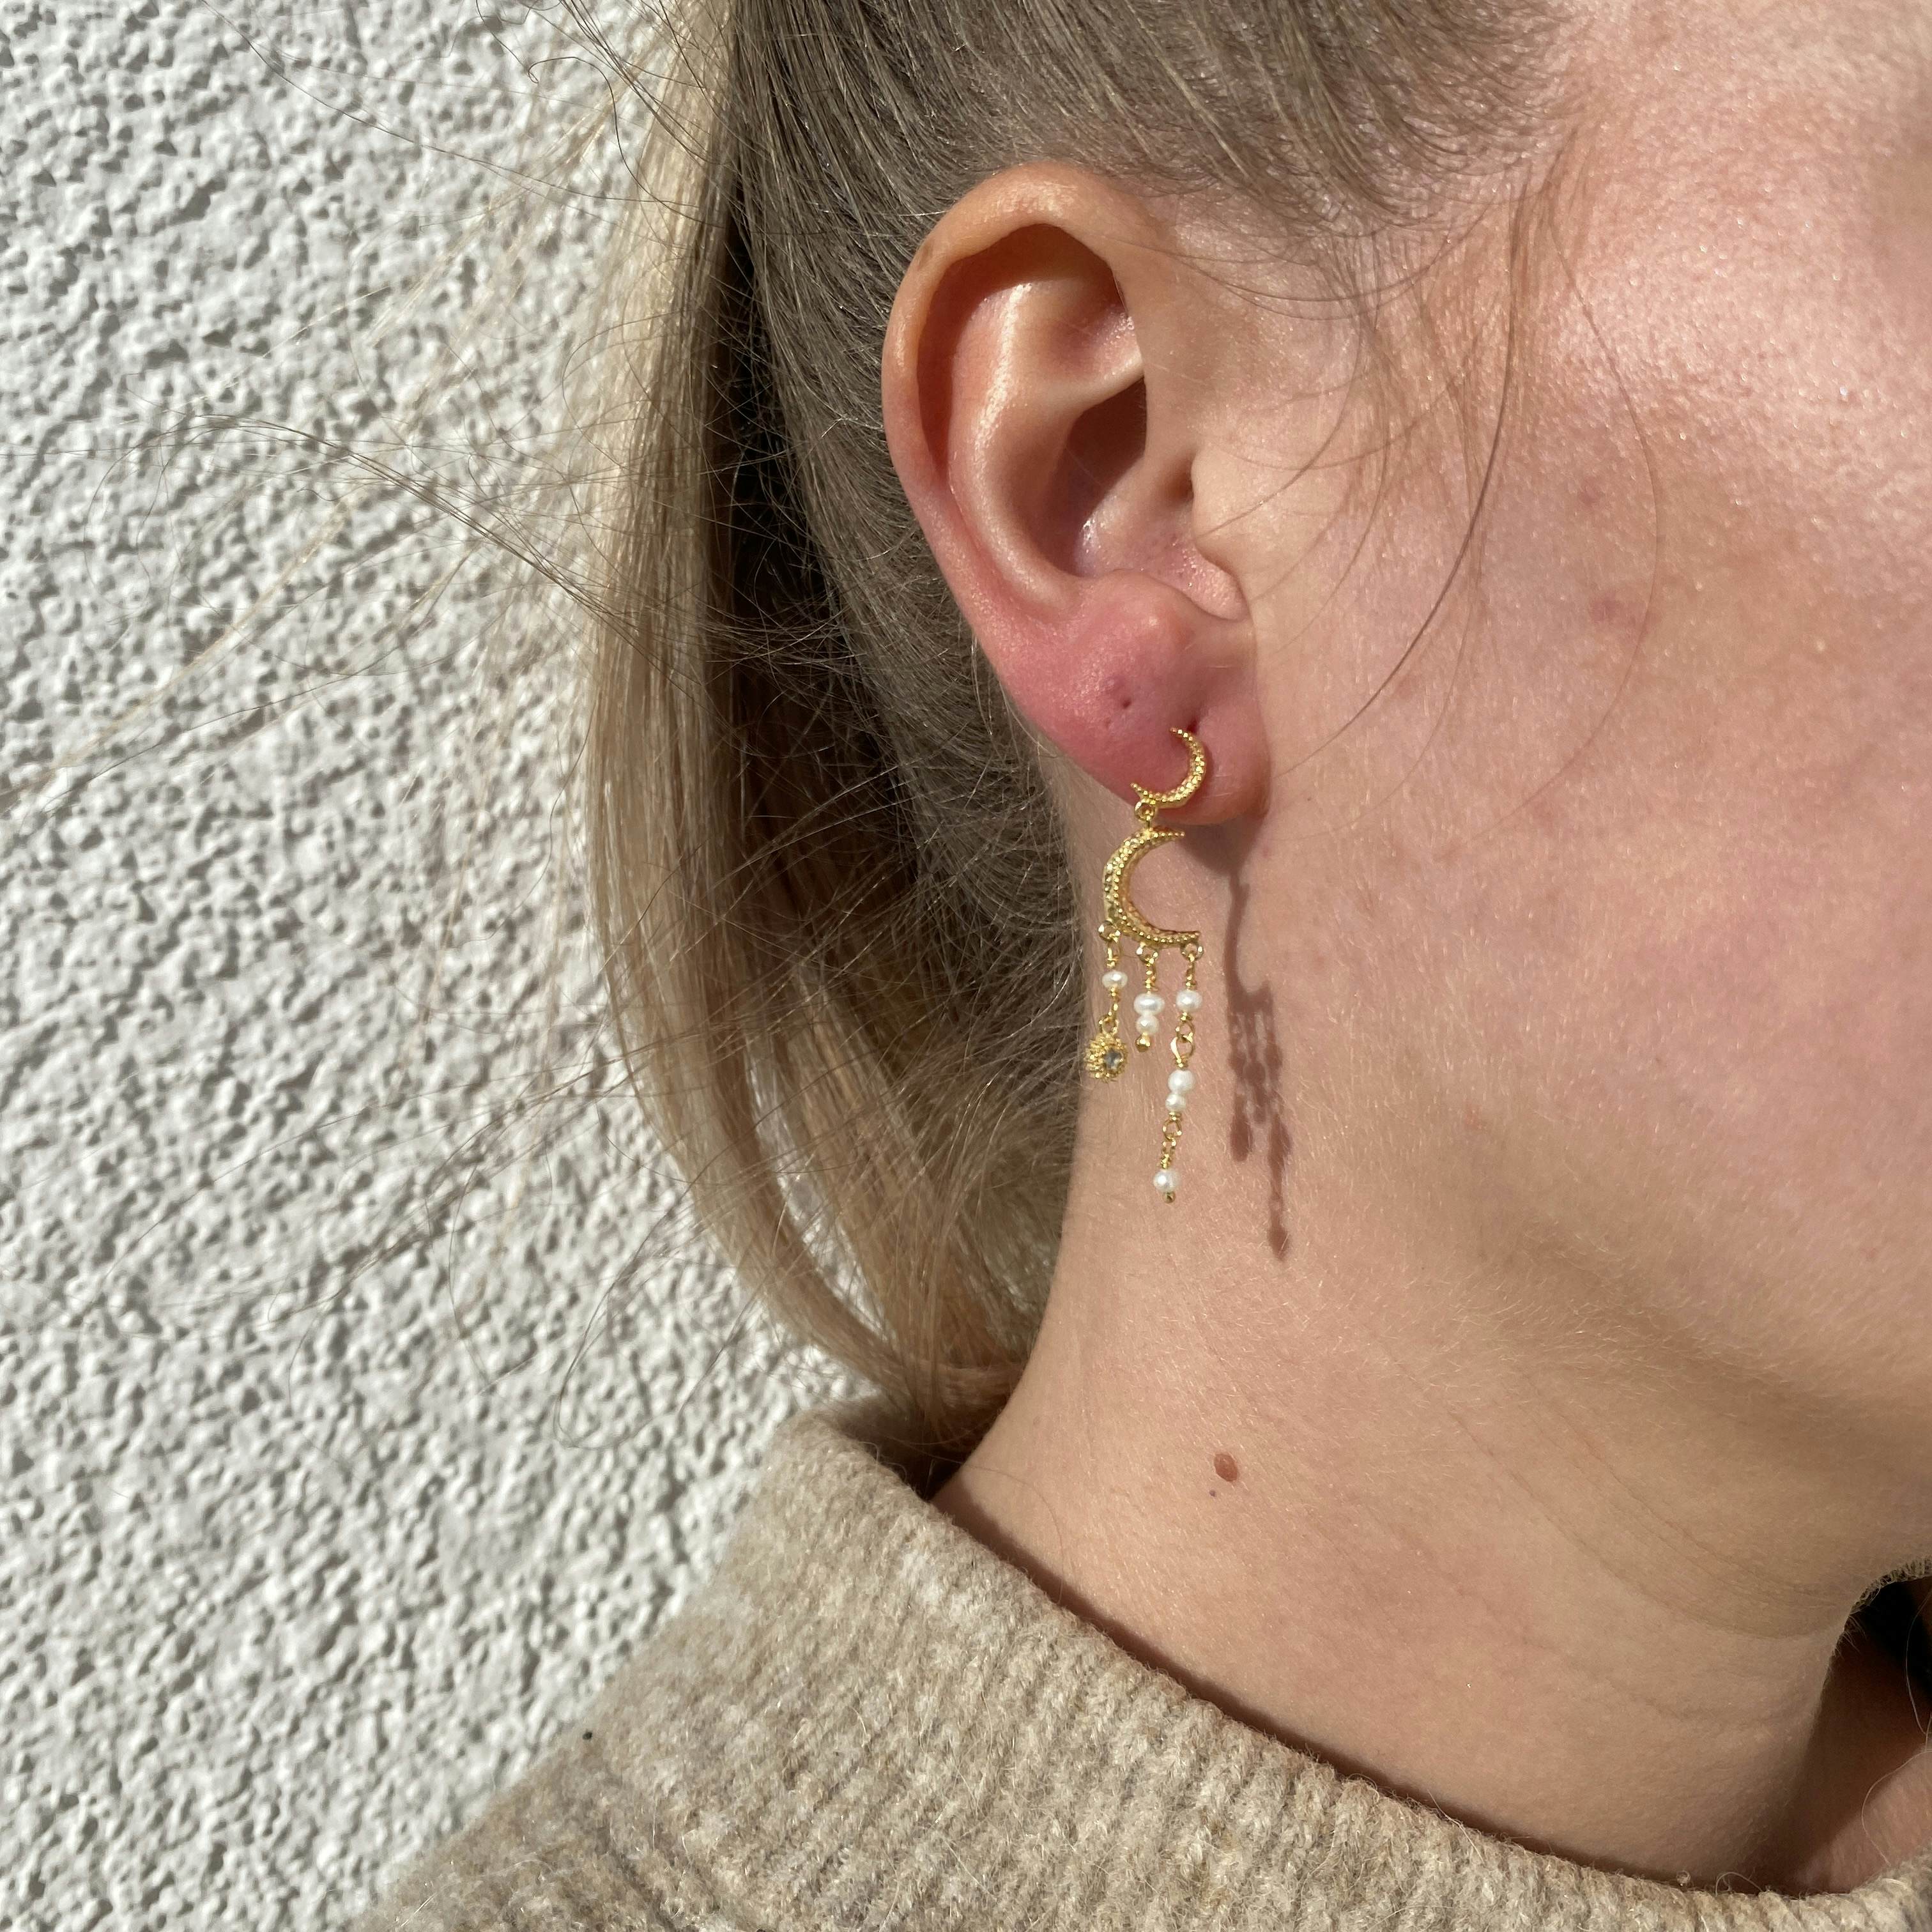 Astrea Earrings from Maanesten in Silver Sterling 925